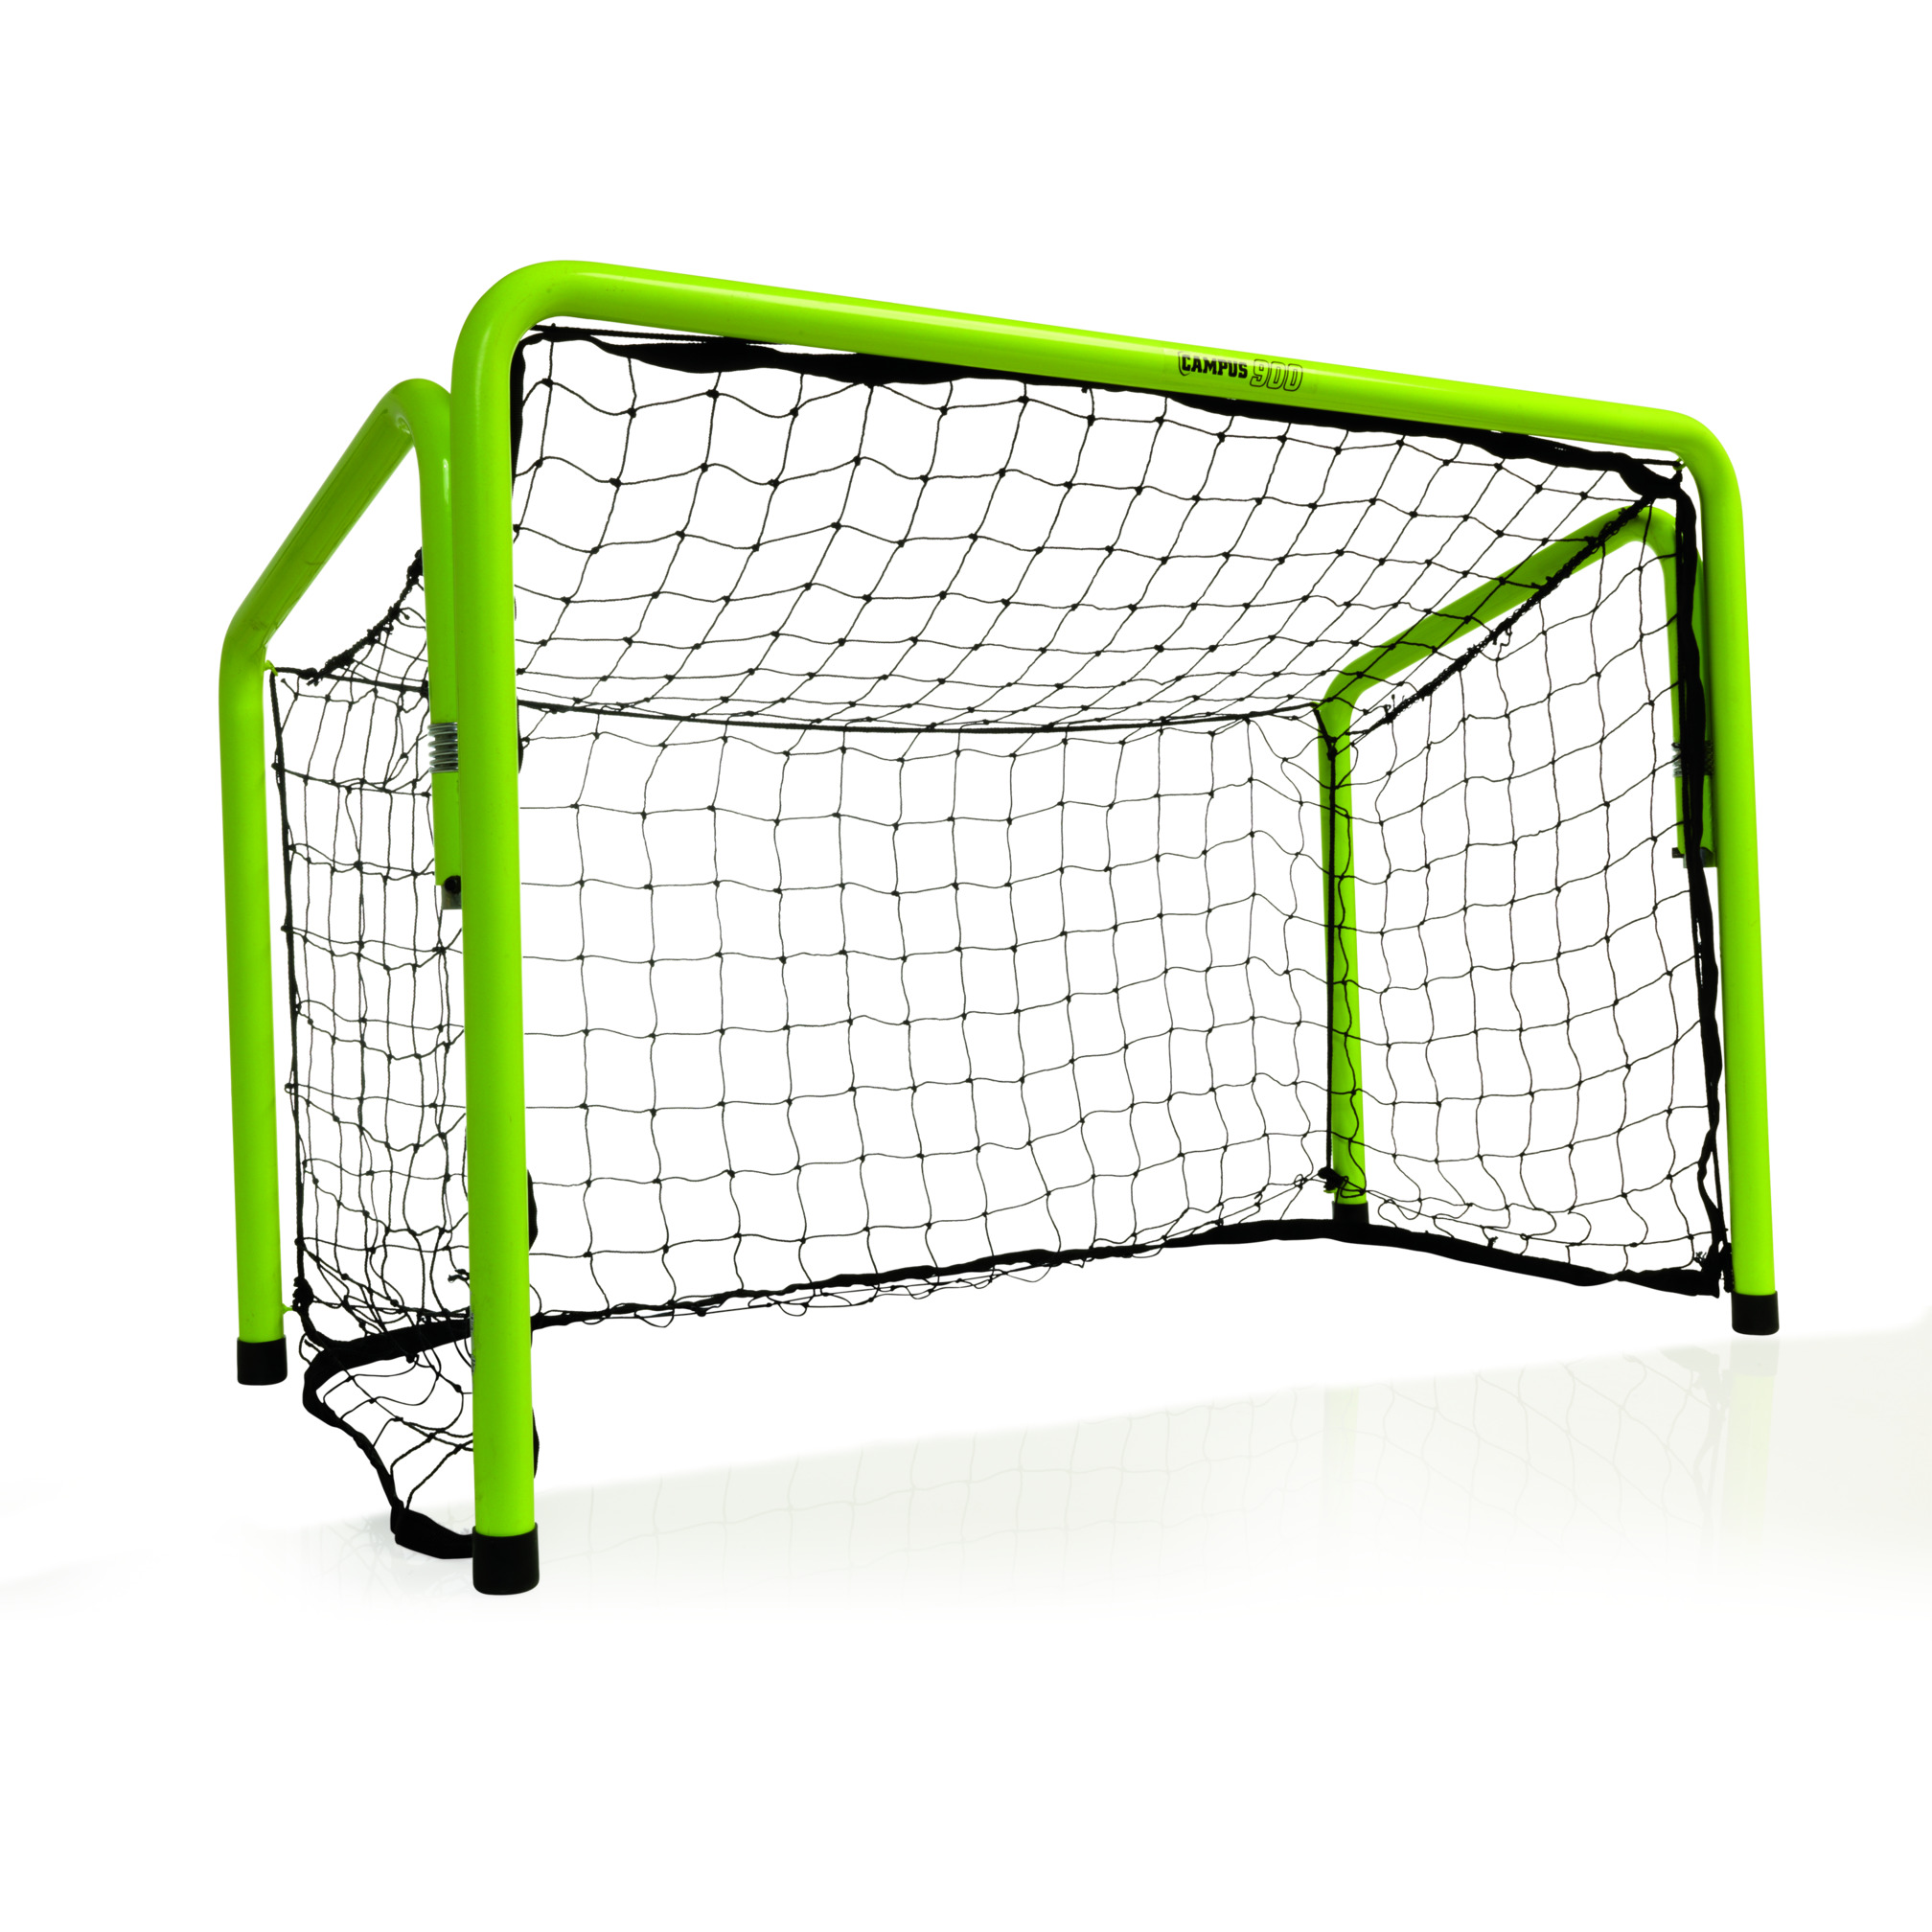 Foldable floorball goal, 60x40 cm